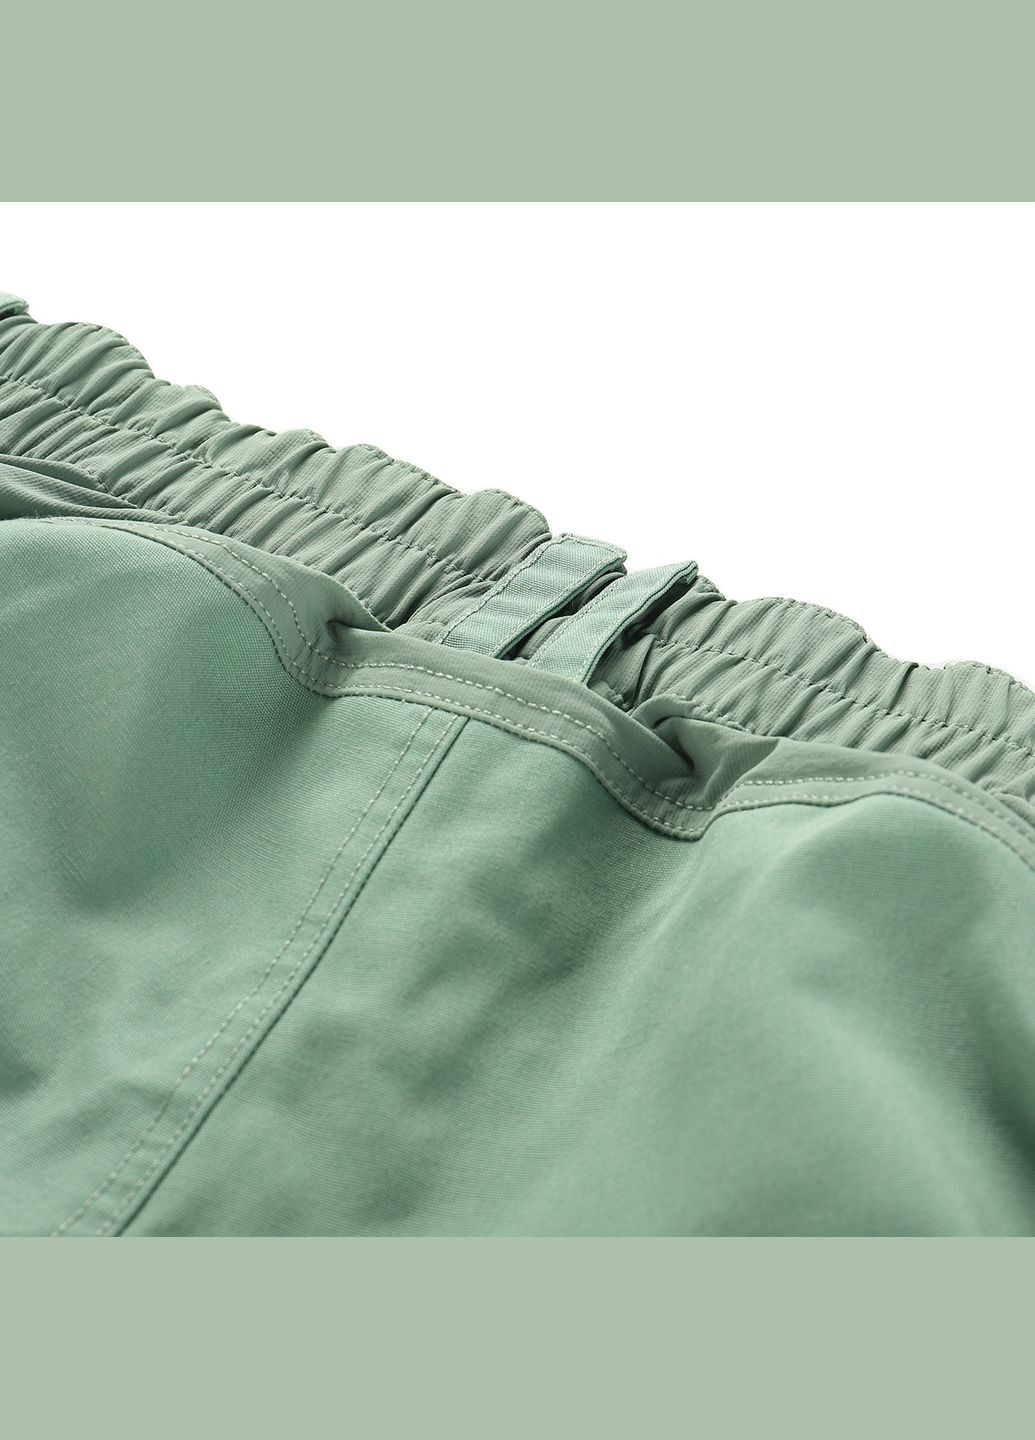 Зеленые брюки Alpine Pro